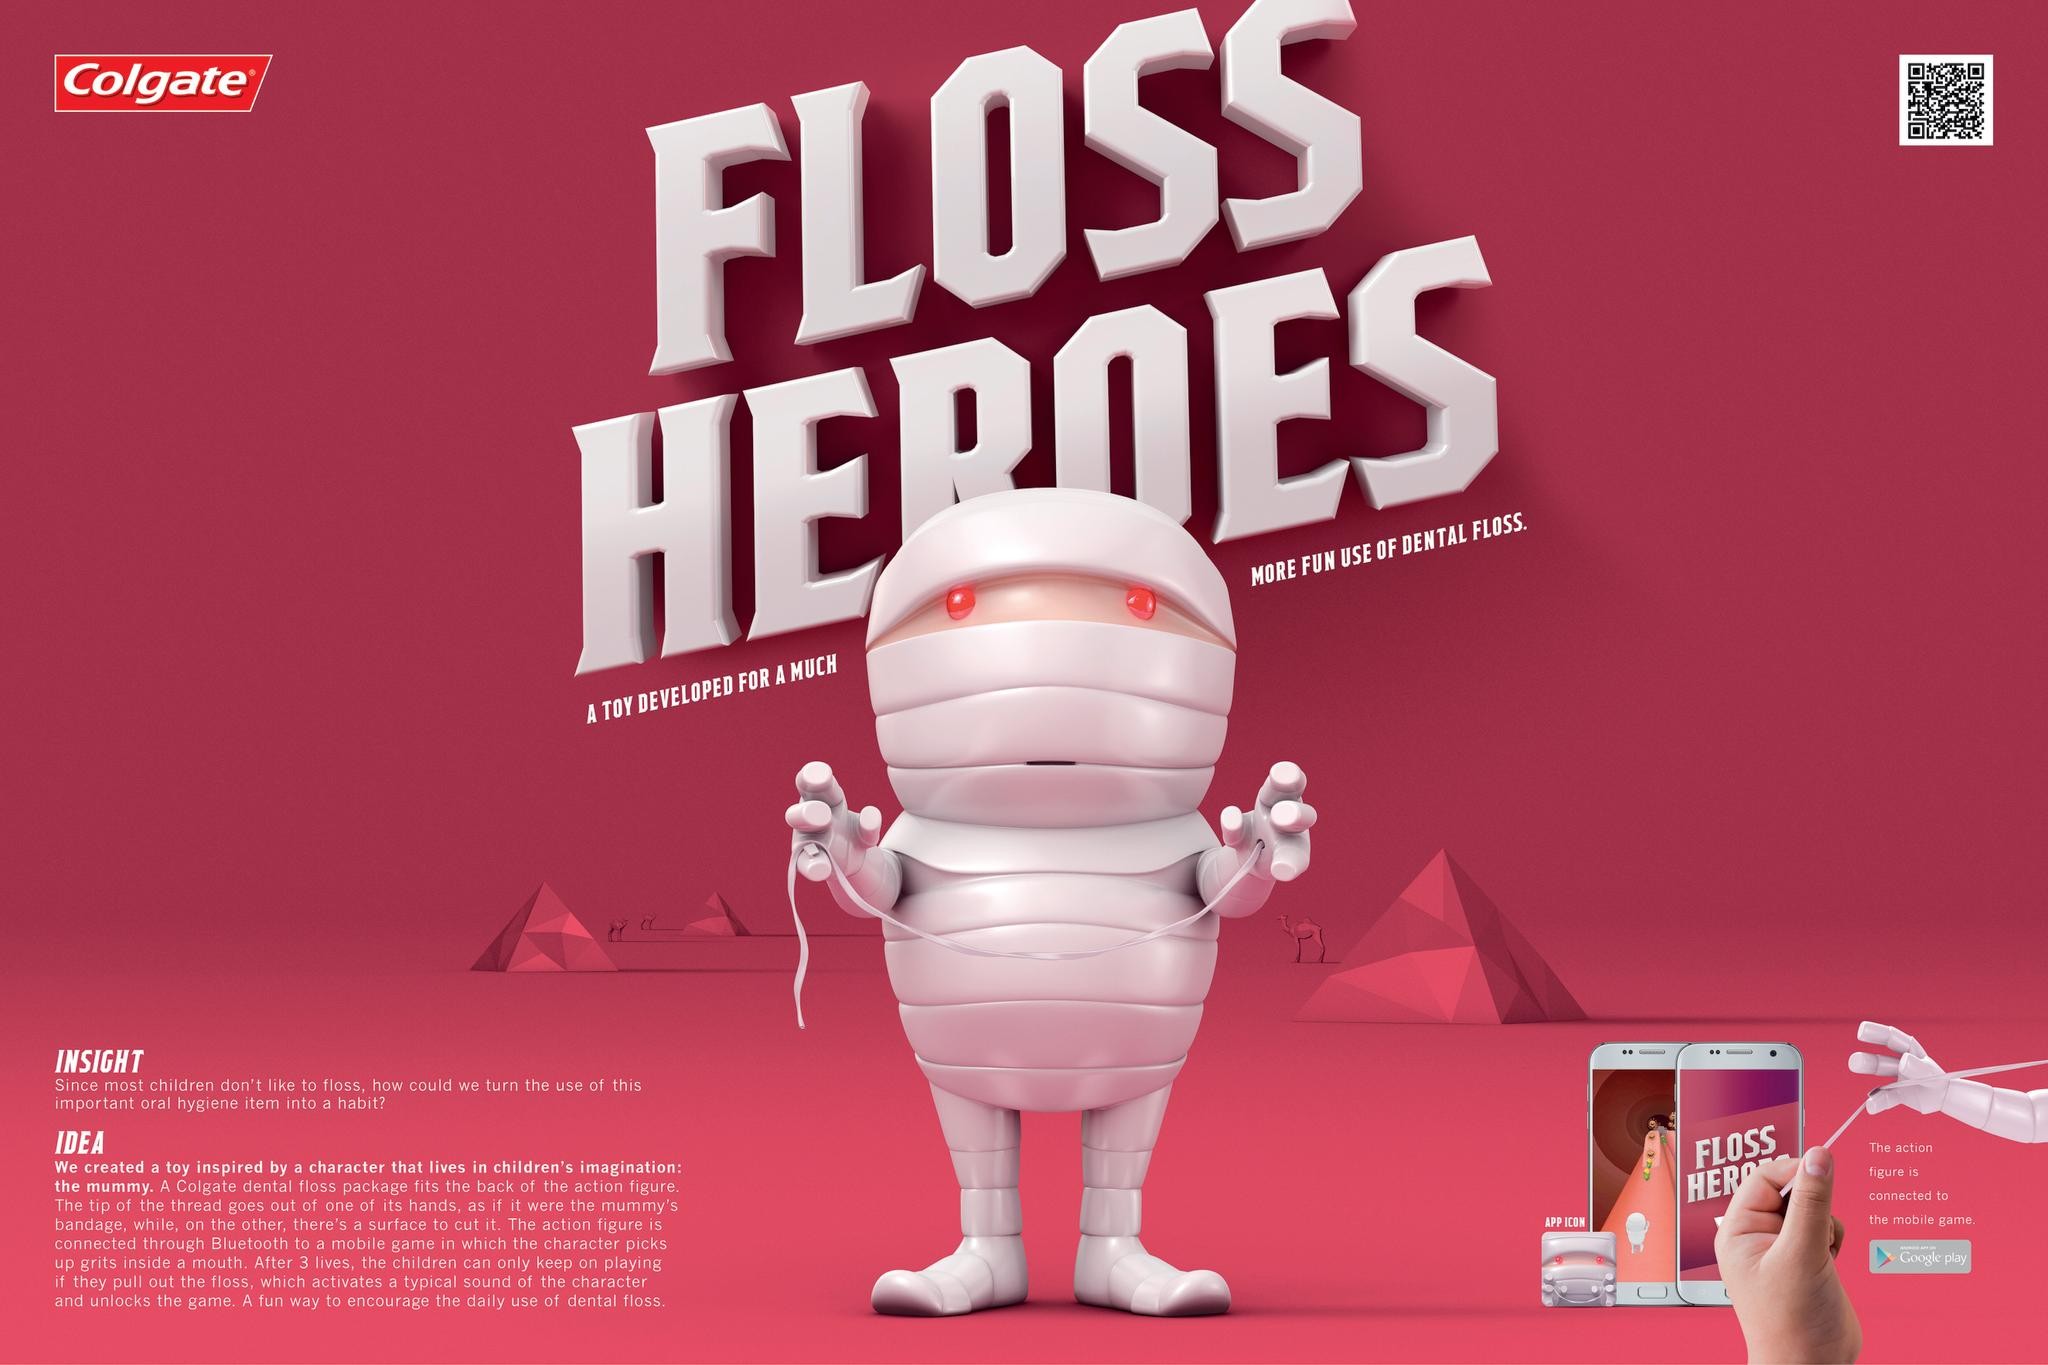 Floss Heroes